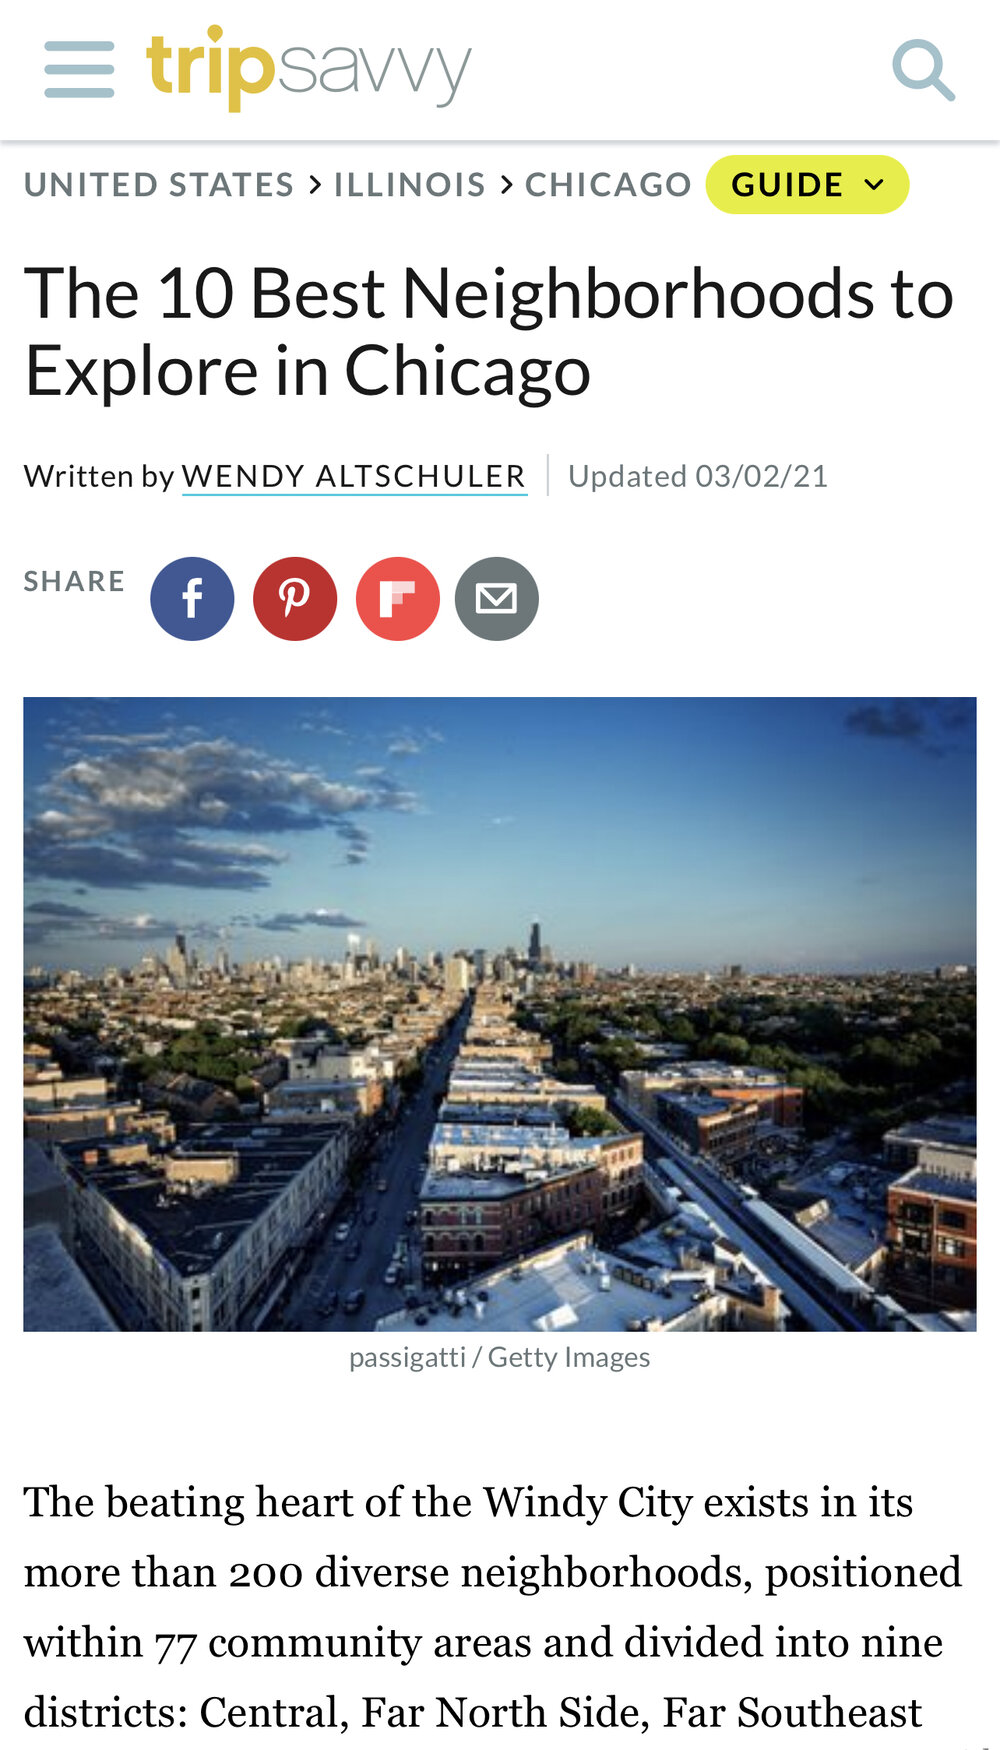 The 10 Best Neighborhoods to Explore in Chicago